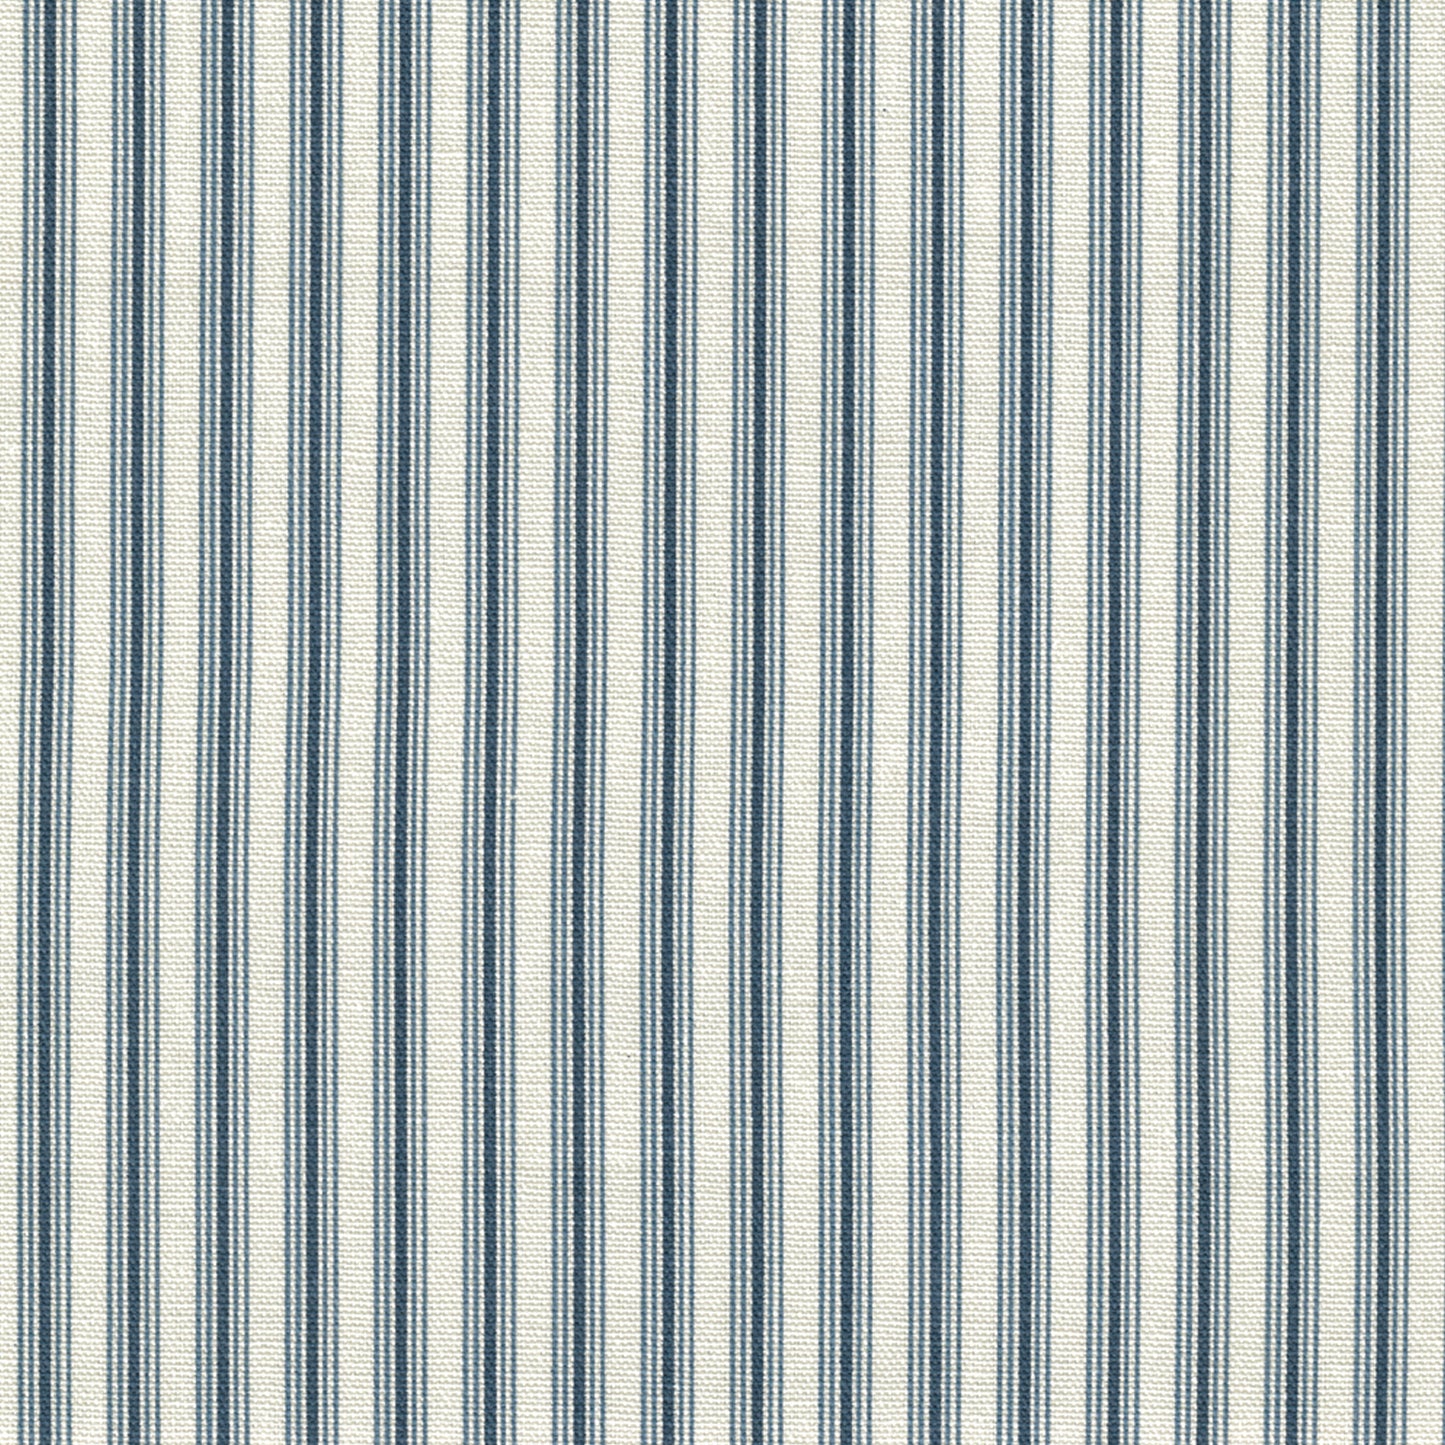 standard tailored sham in cottage navy blue stripe